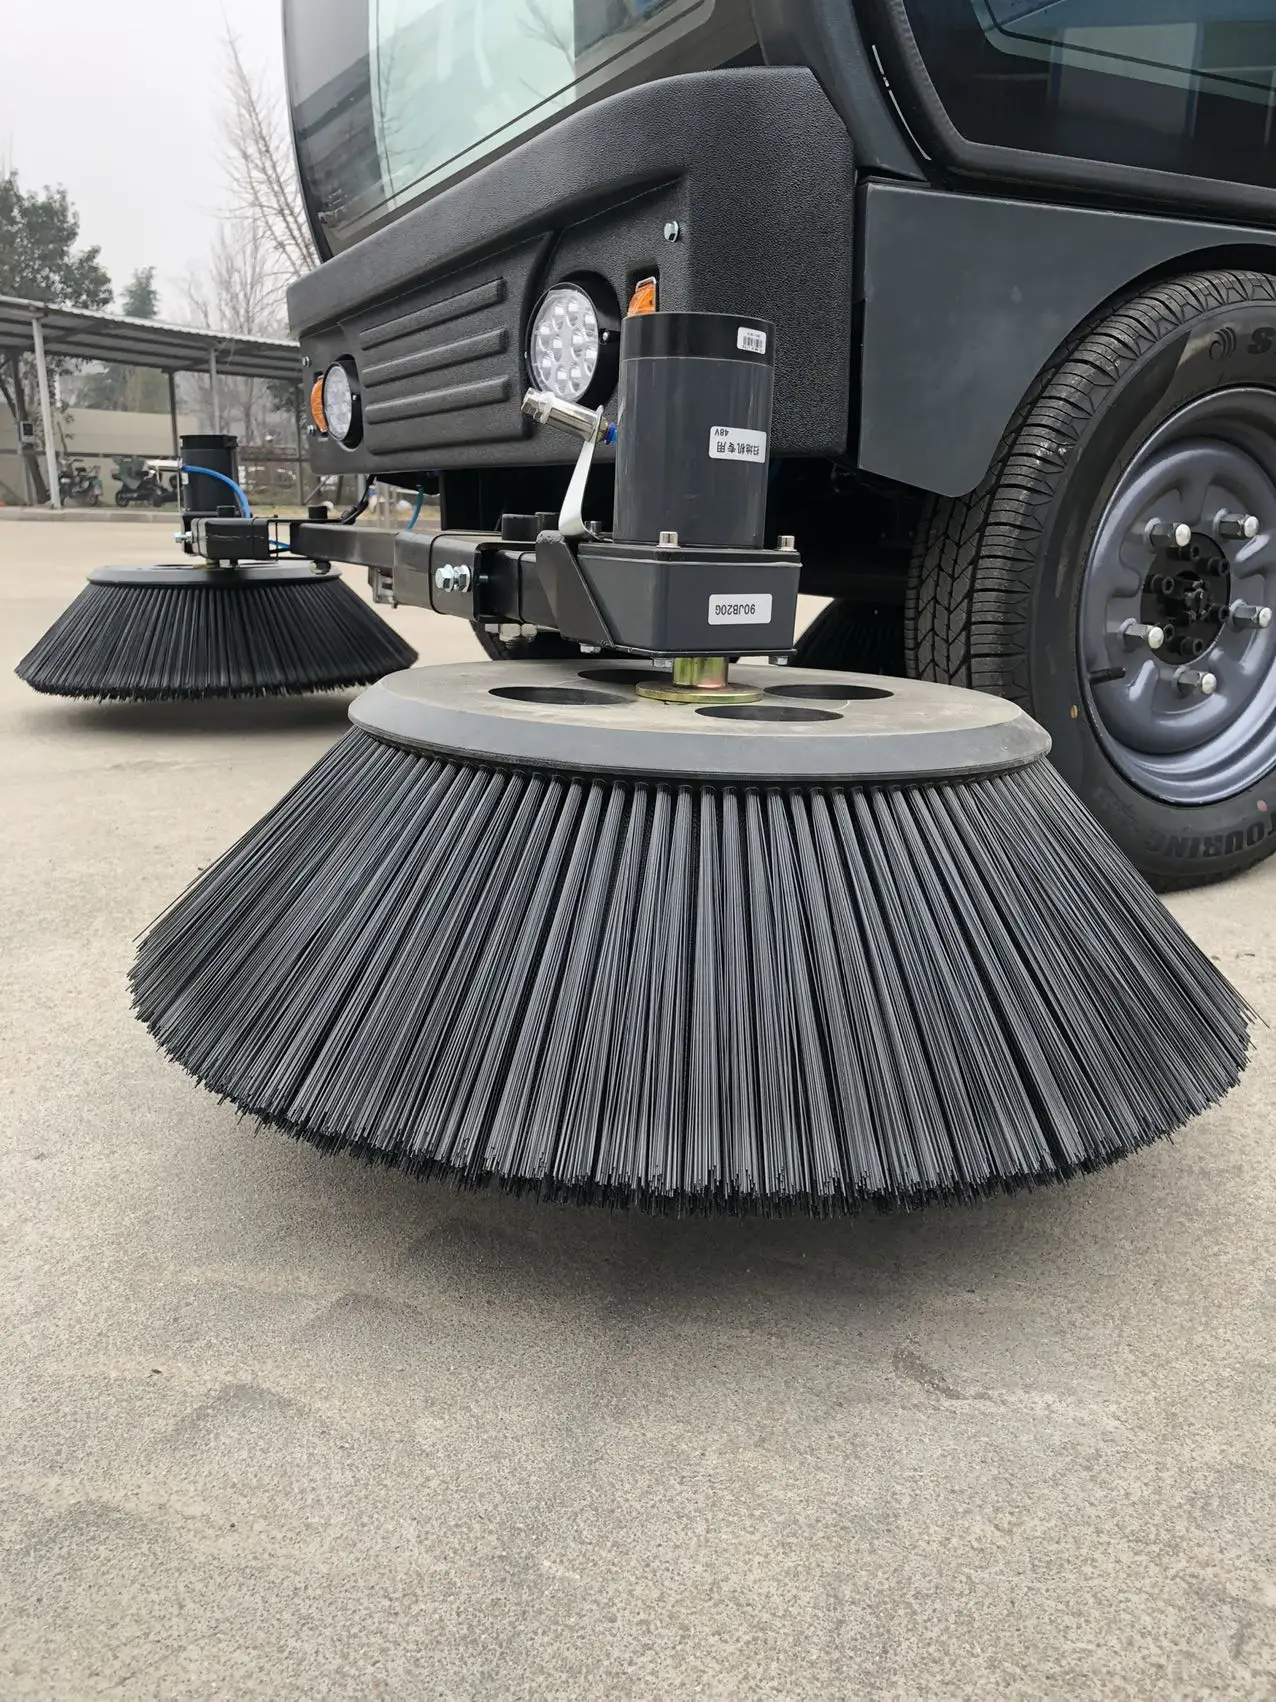 Limpieza de suelos de carretera Eléctrica Industrial Máquina barredora -  China Planta eléctrica Industrial Sweeper Escoba de limpieza de suelos,  limpieza